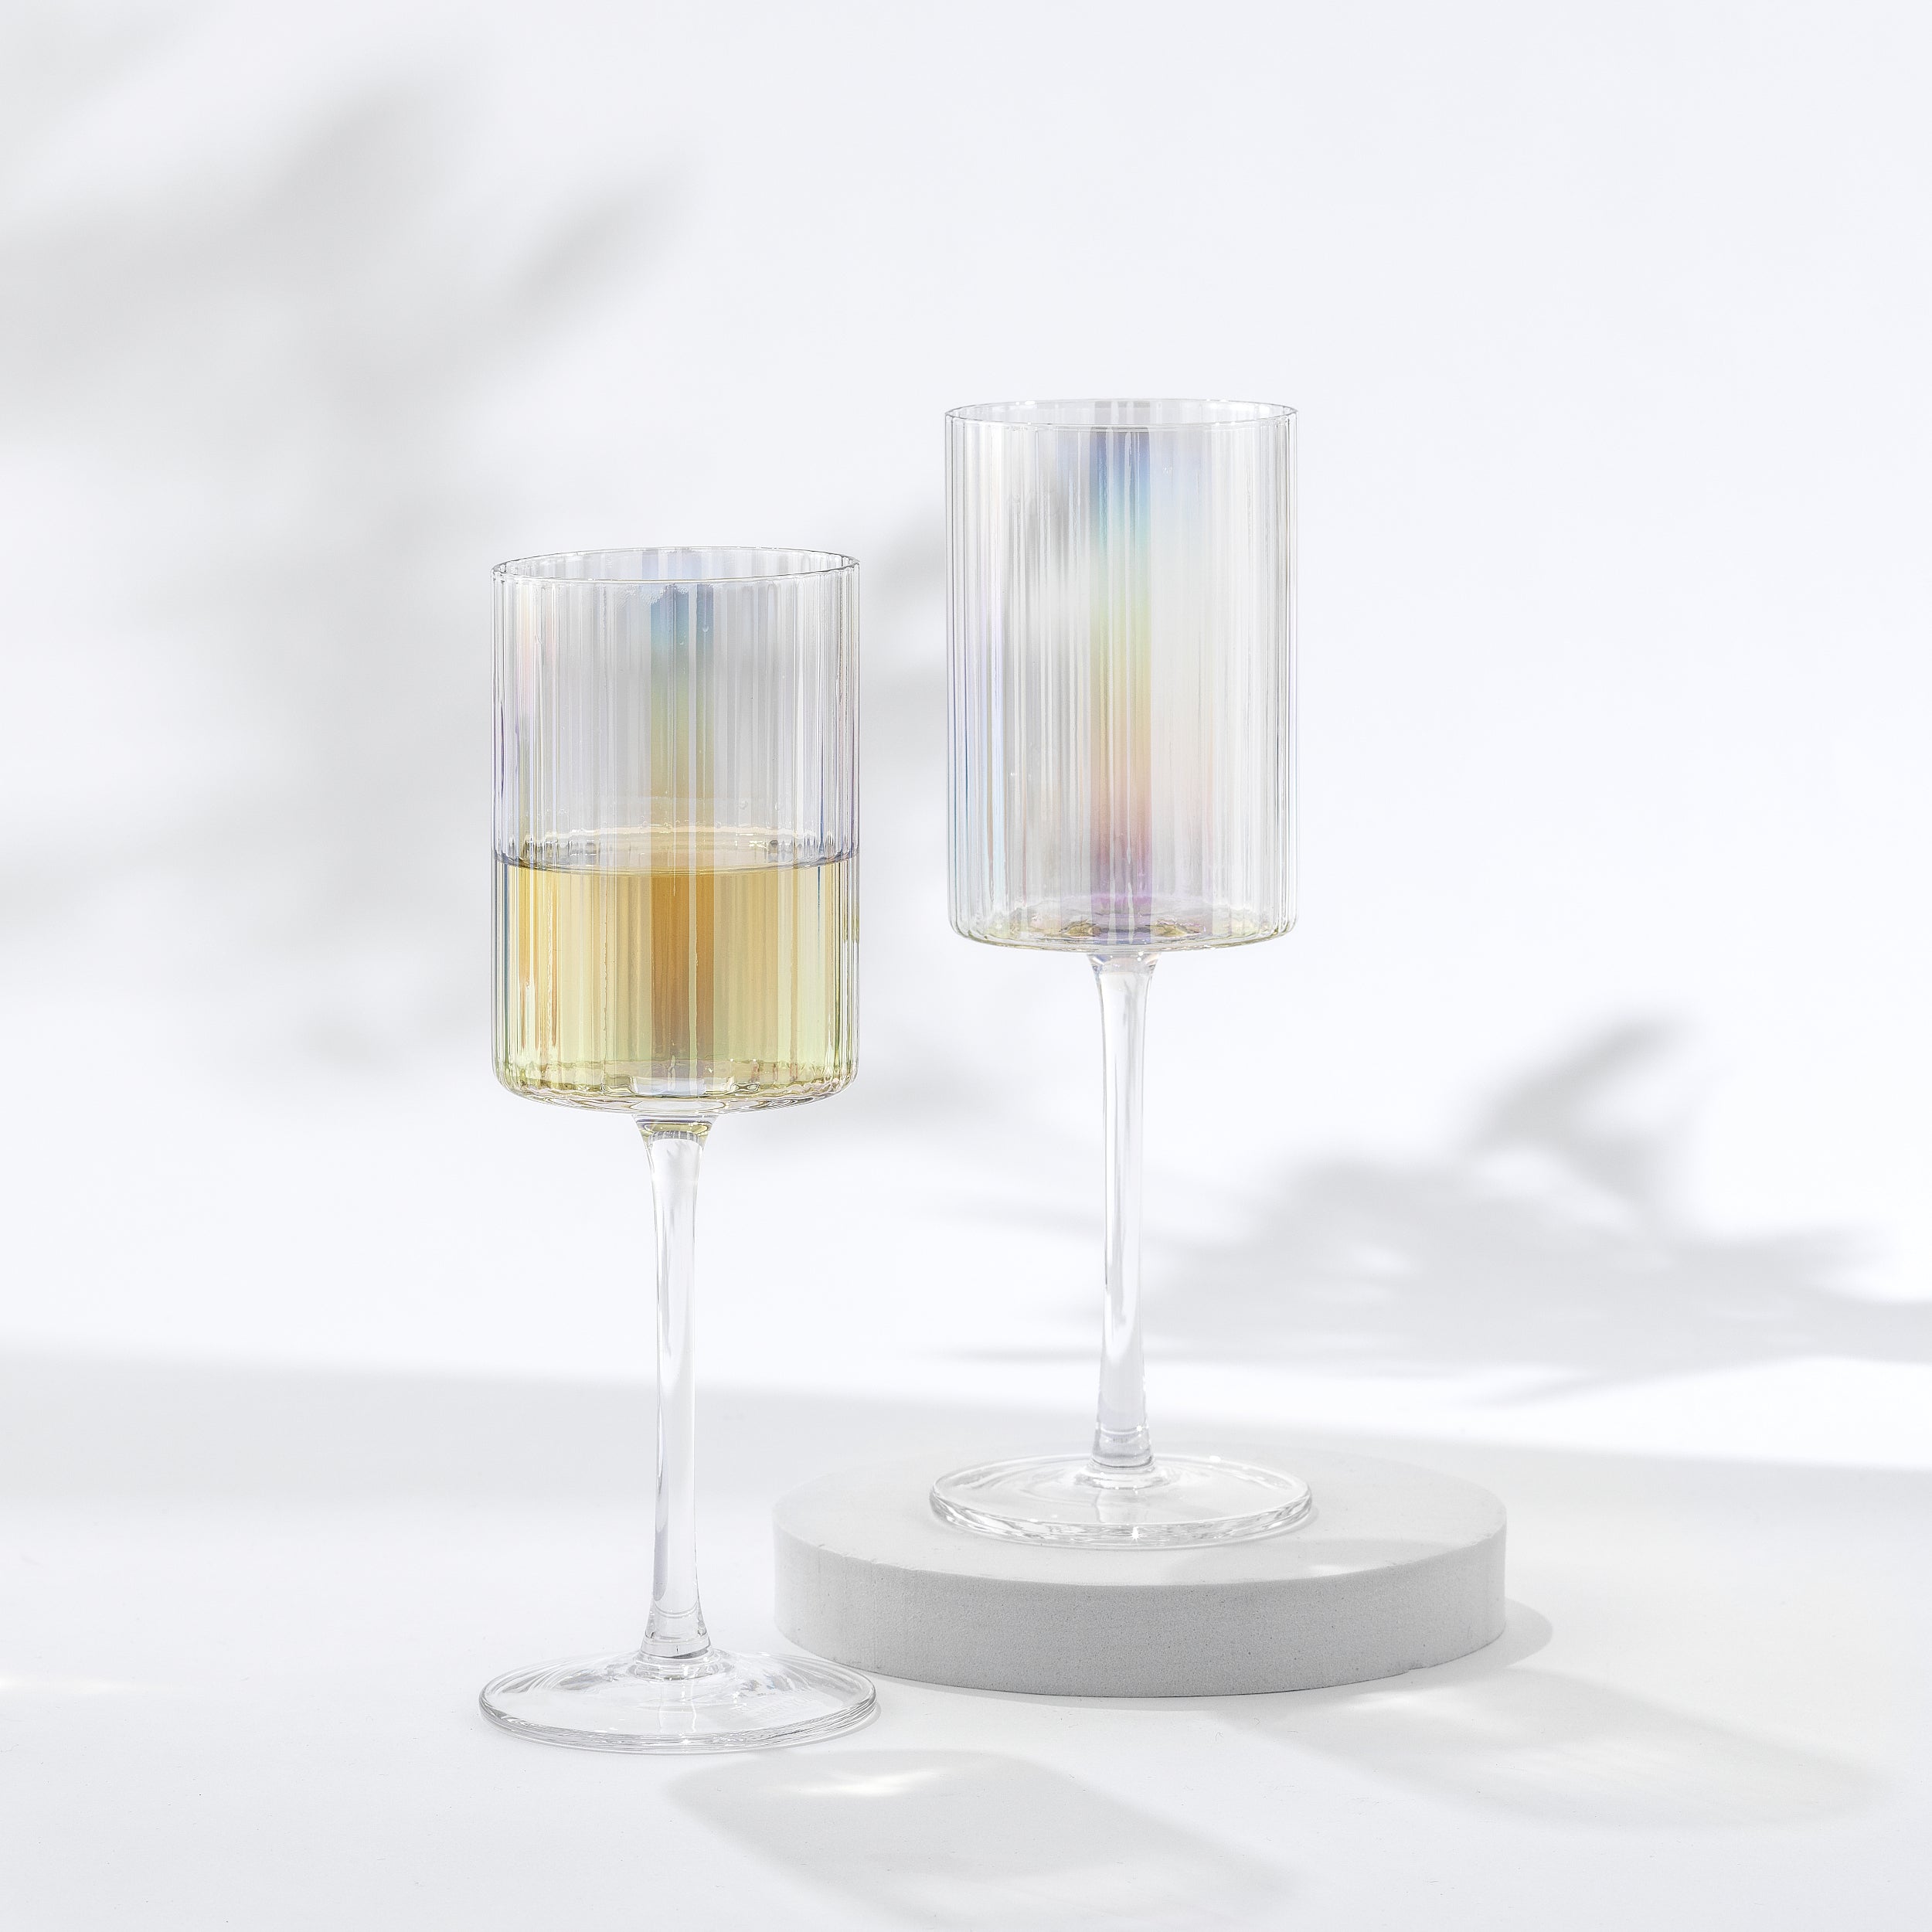 Christian Siriano New York Chroma Iridescent White Wine Glass - 11.5 oz